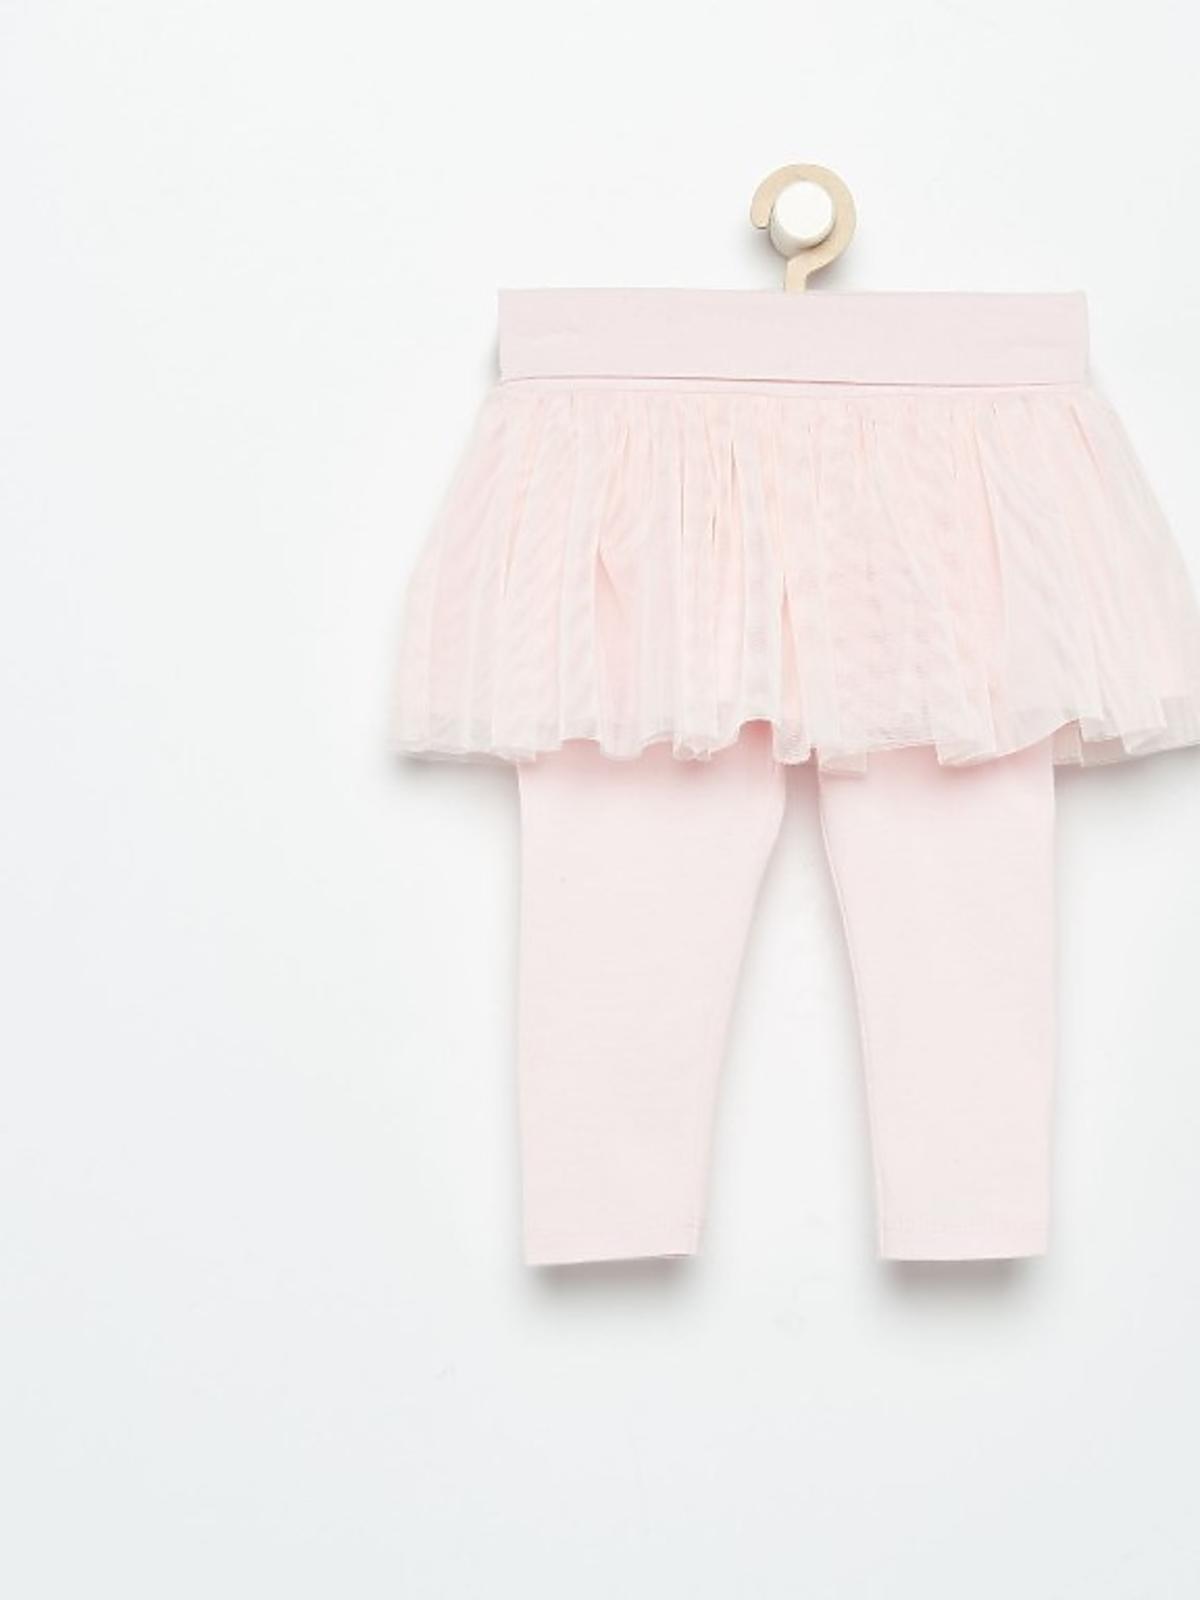 spodnie-dla-niemowlecia-ze-spodniczka-39-99zl-reserved-pl.jpg